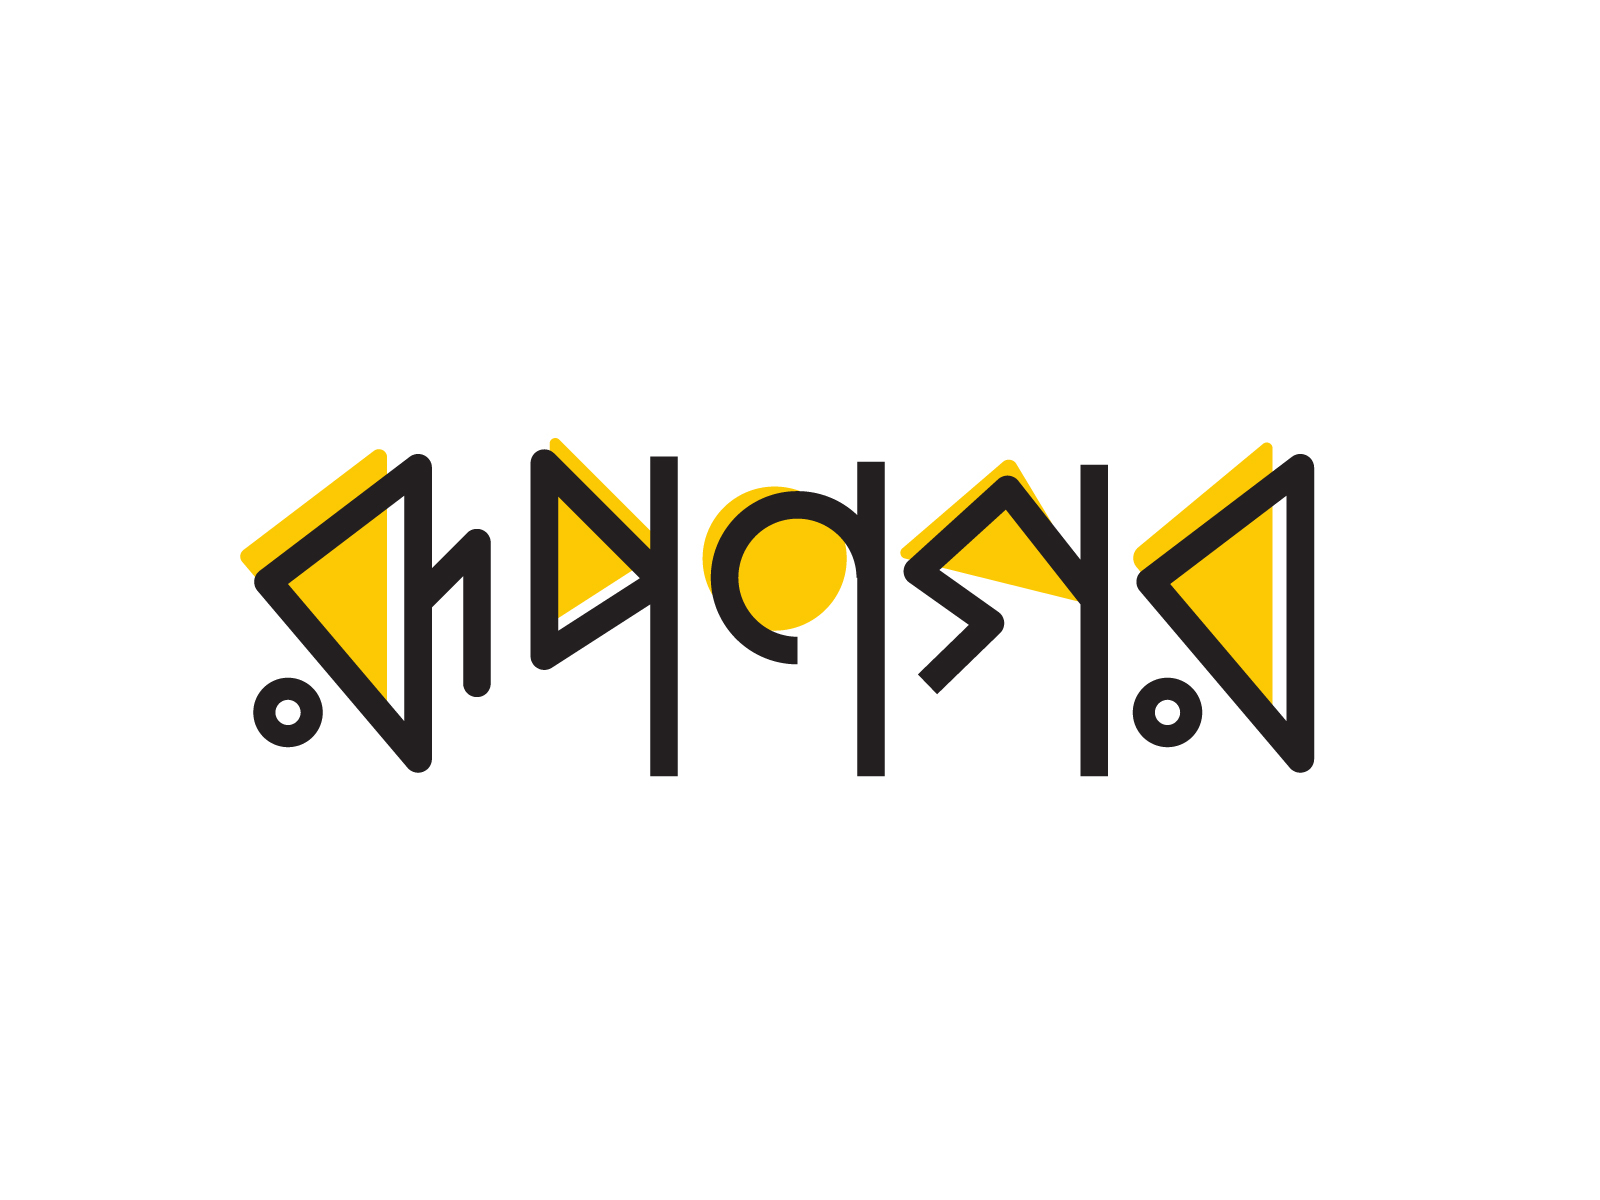 write stylish bengali text on image online